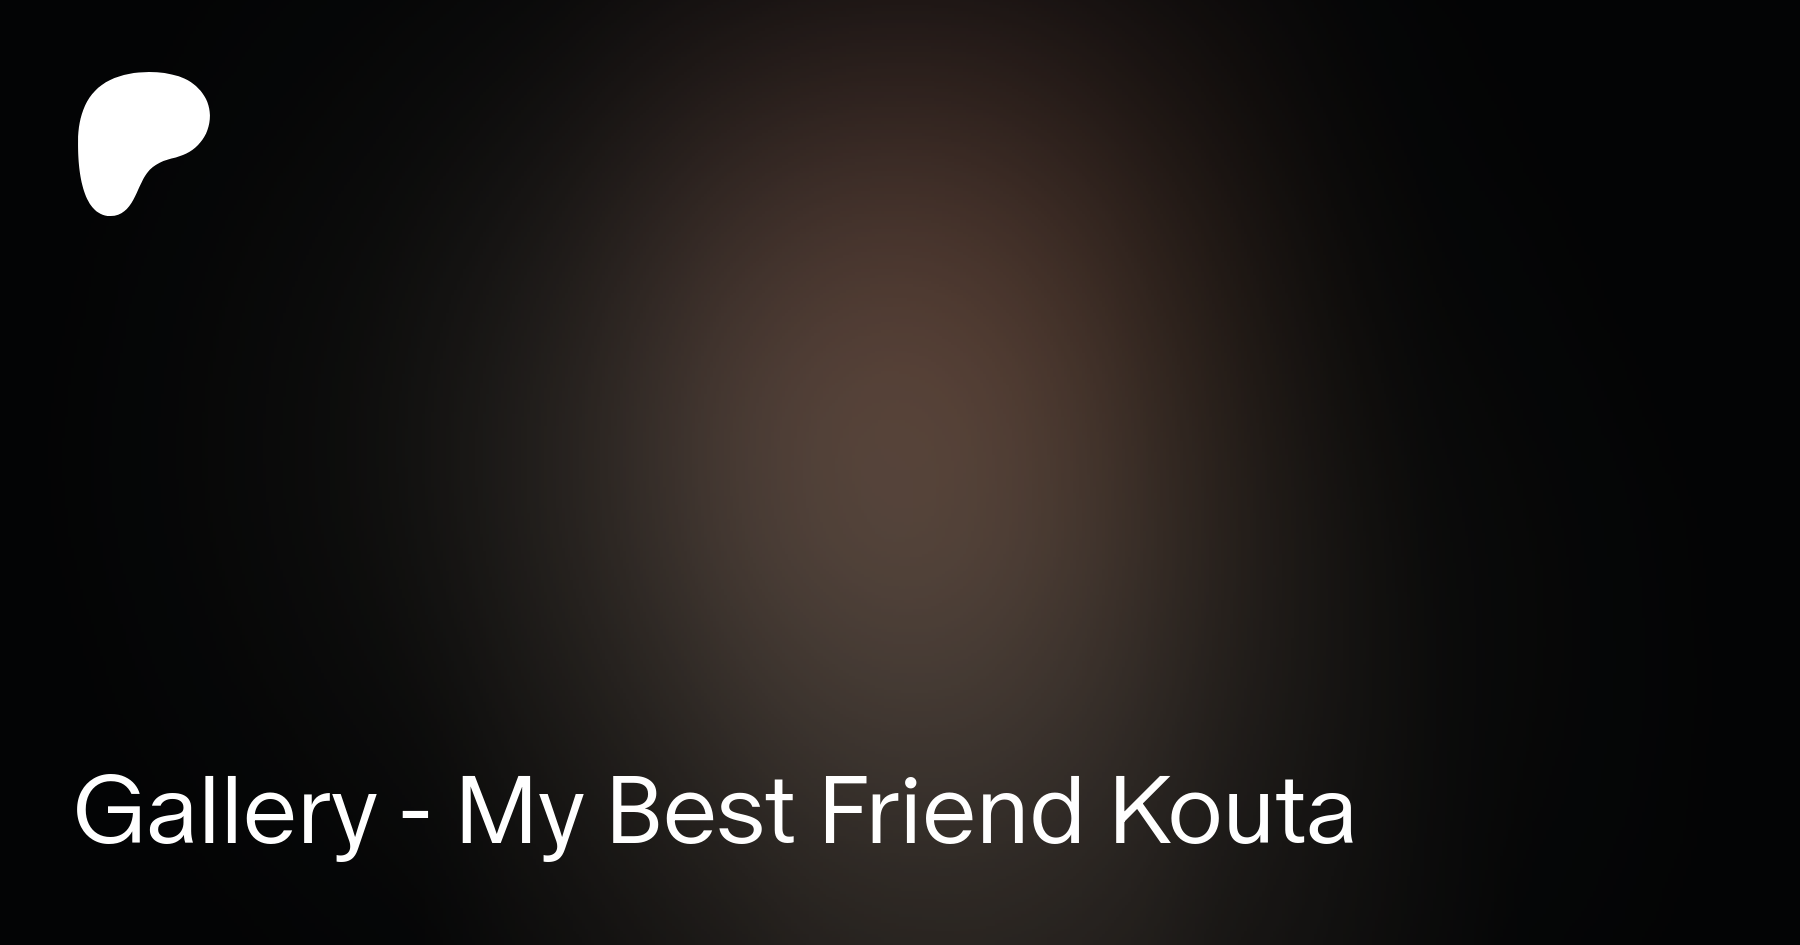 My best friend kouta